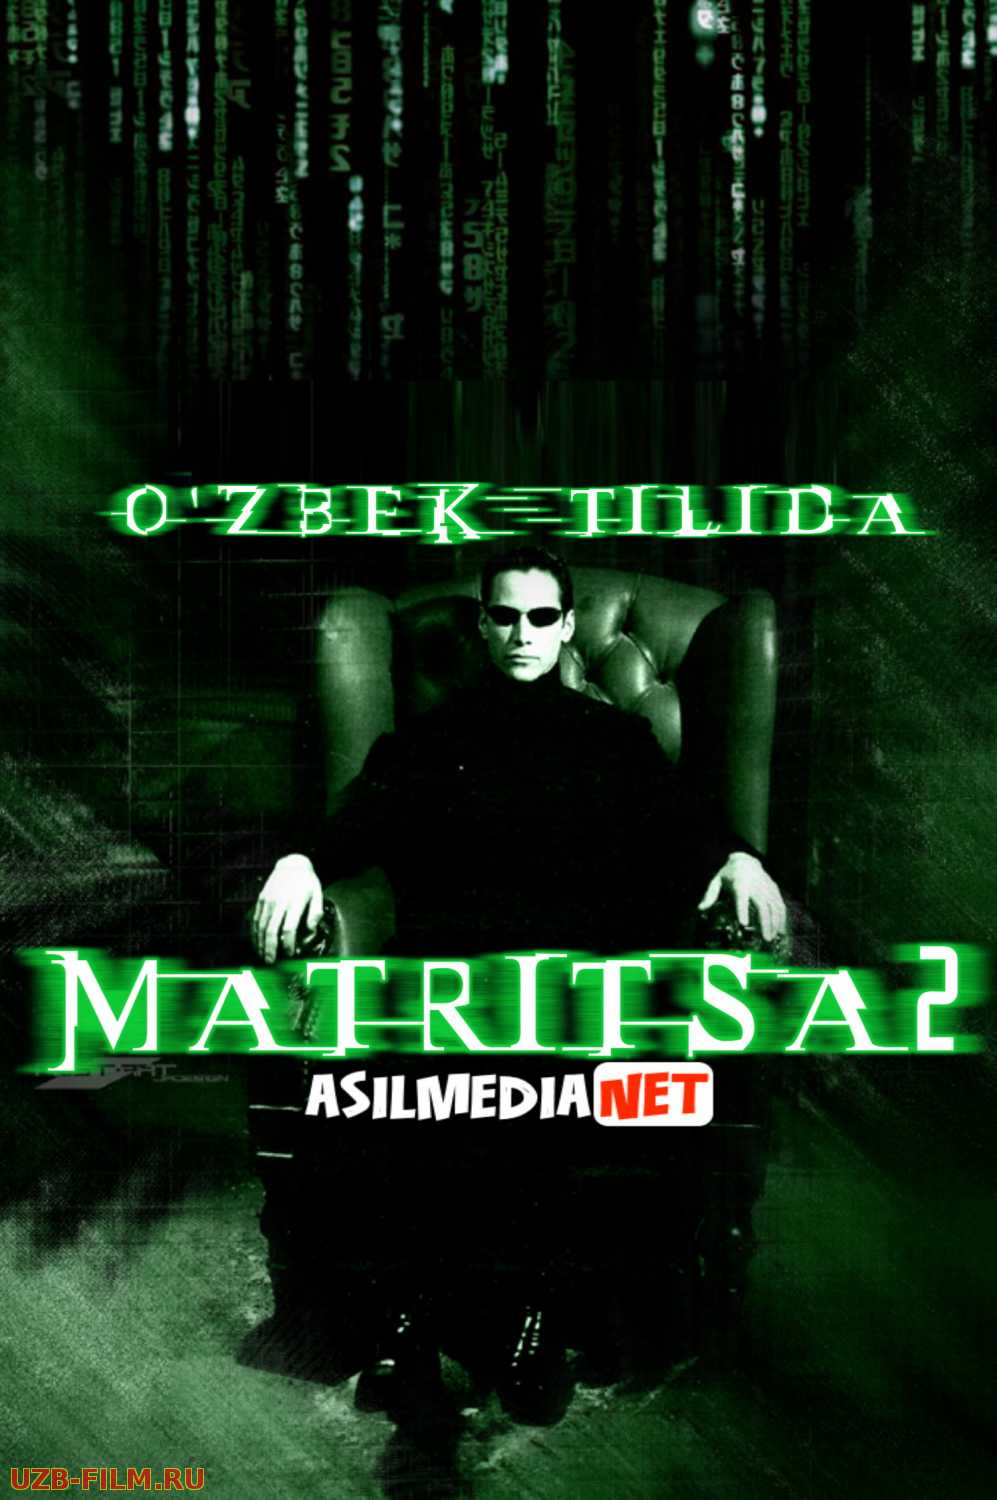 Matritsa 2 - Matrix 2 Qayta yuklanish Revolyutsiya (Uzbek tilida Horij kino HD)